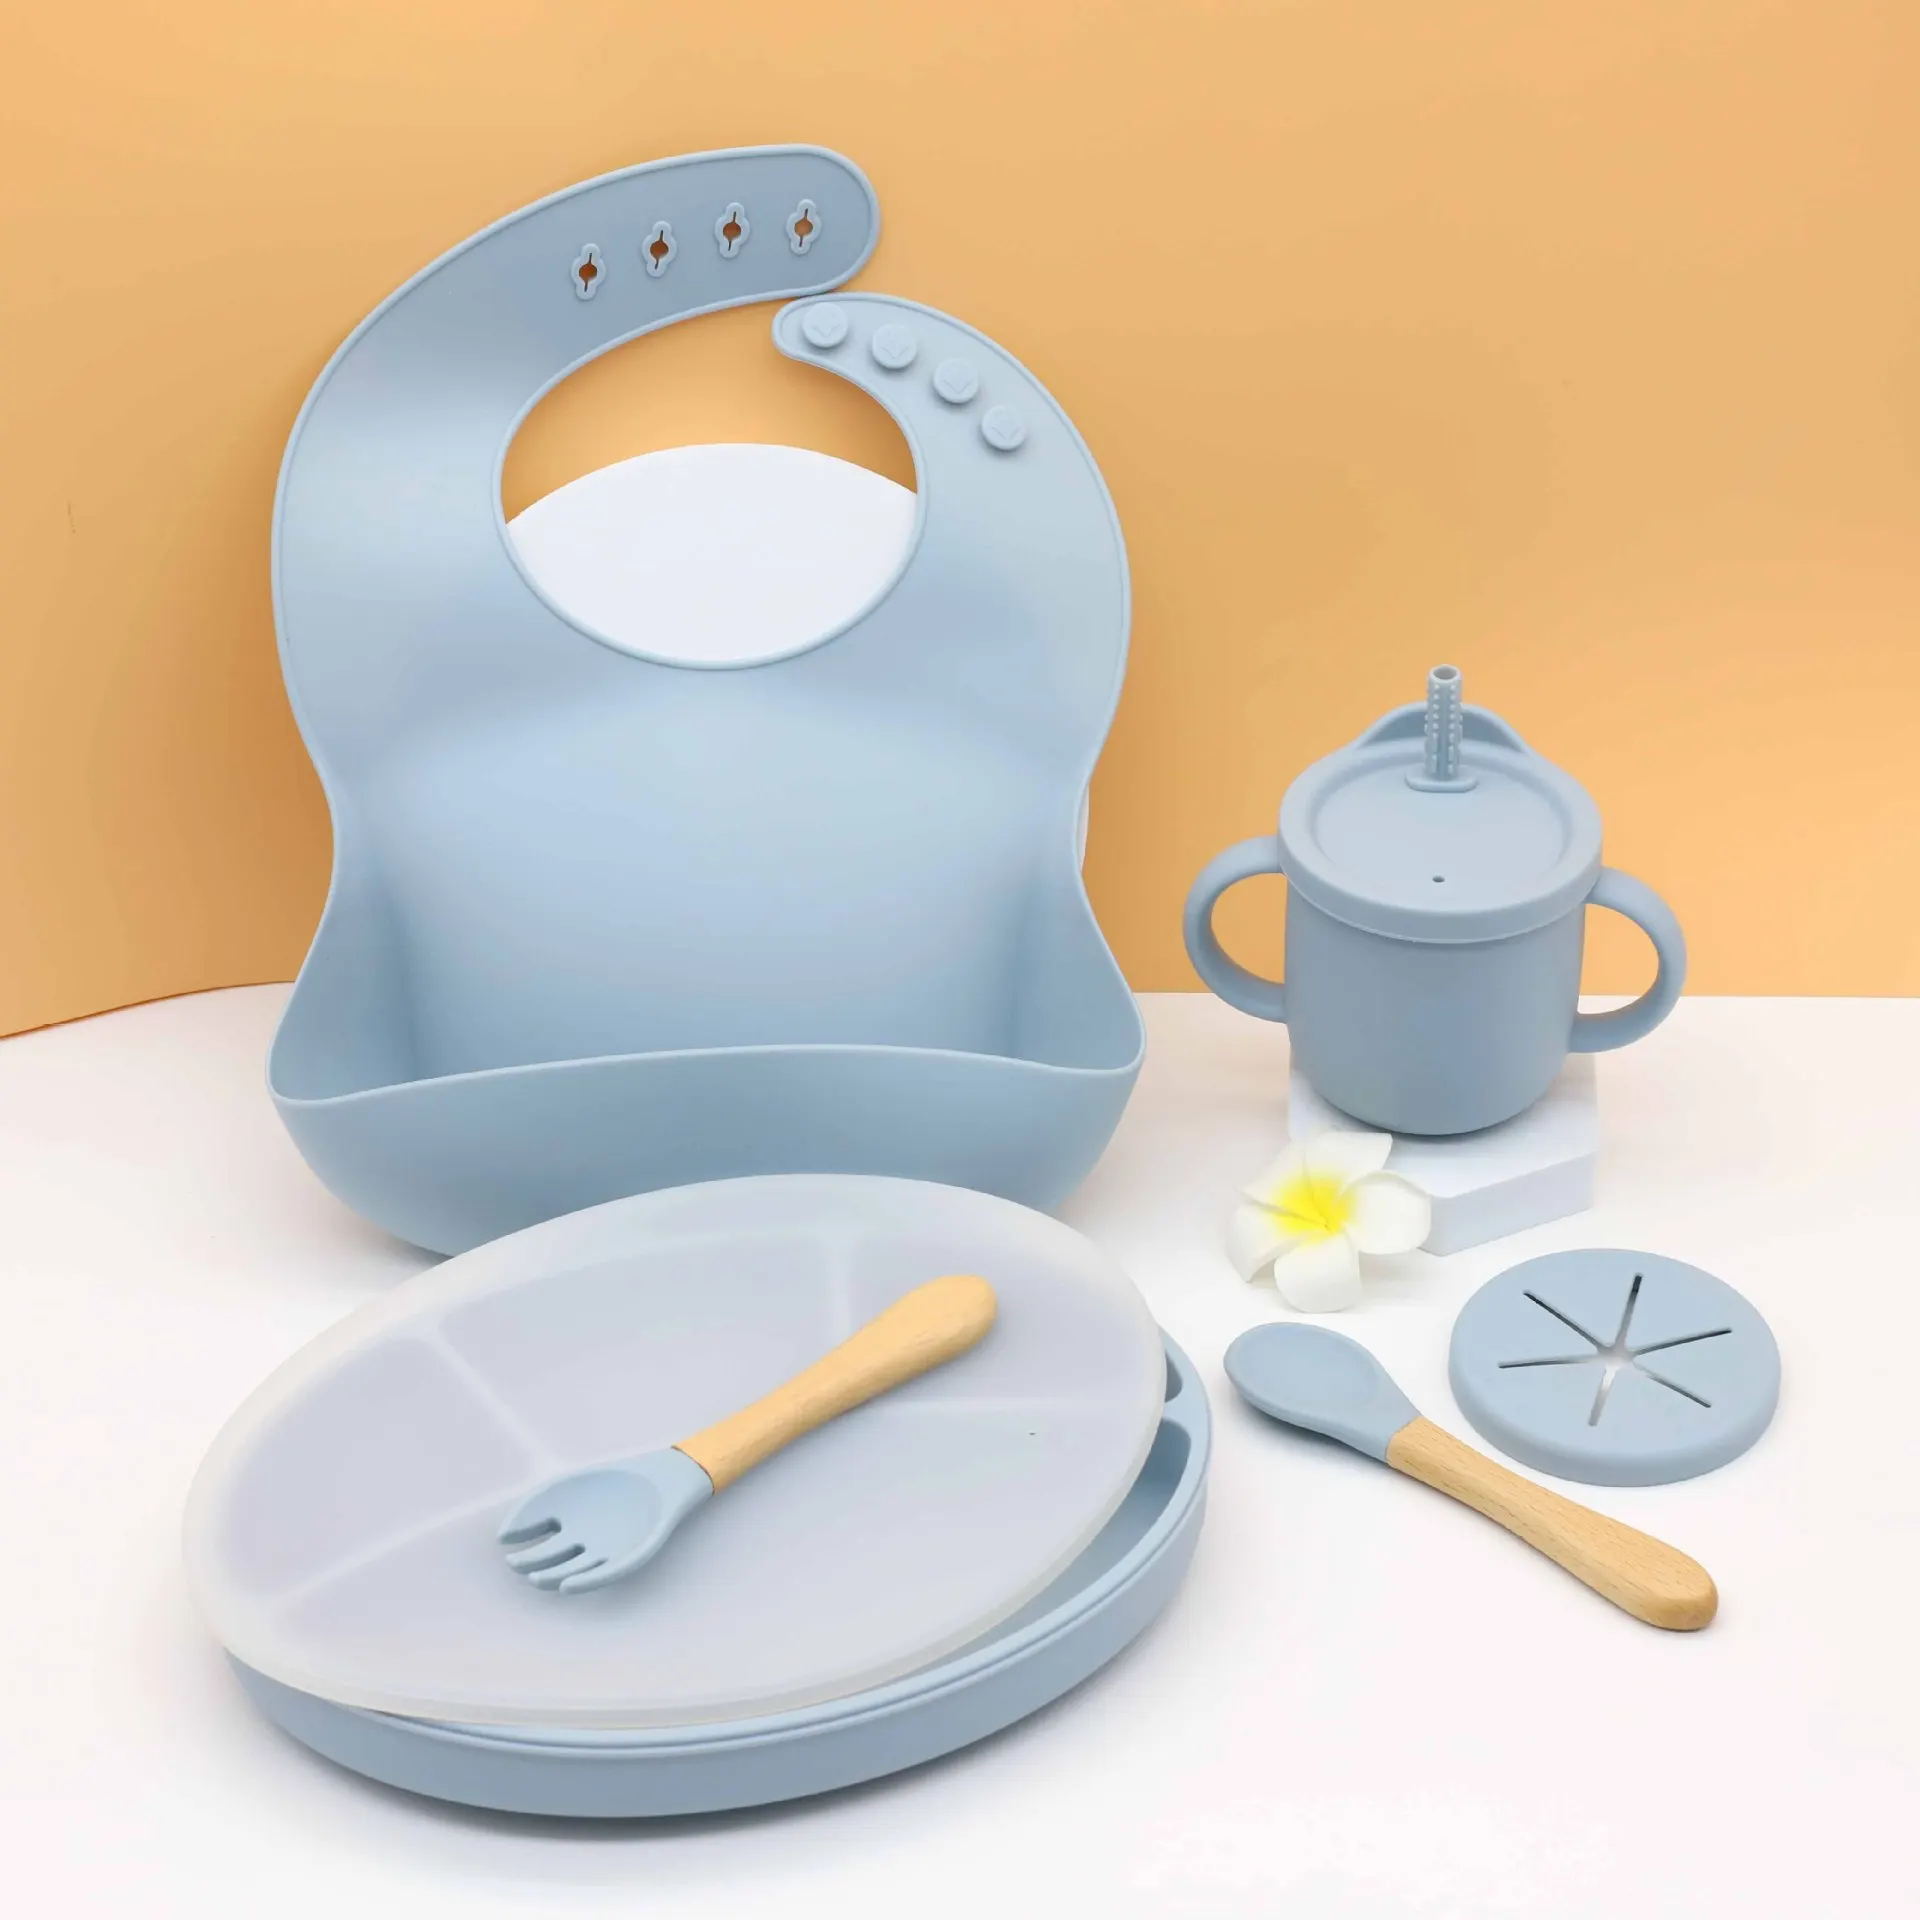 

Детская силиконовая посуда для кормления, обеденная тарелка на присосках с крышкой, нагрудники, ложка, вилка, чашка, набор посуды для обучен...